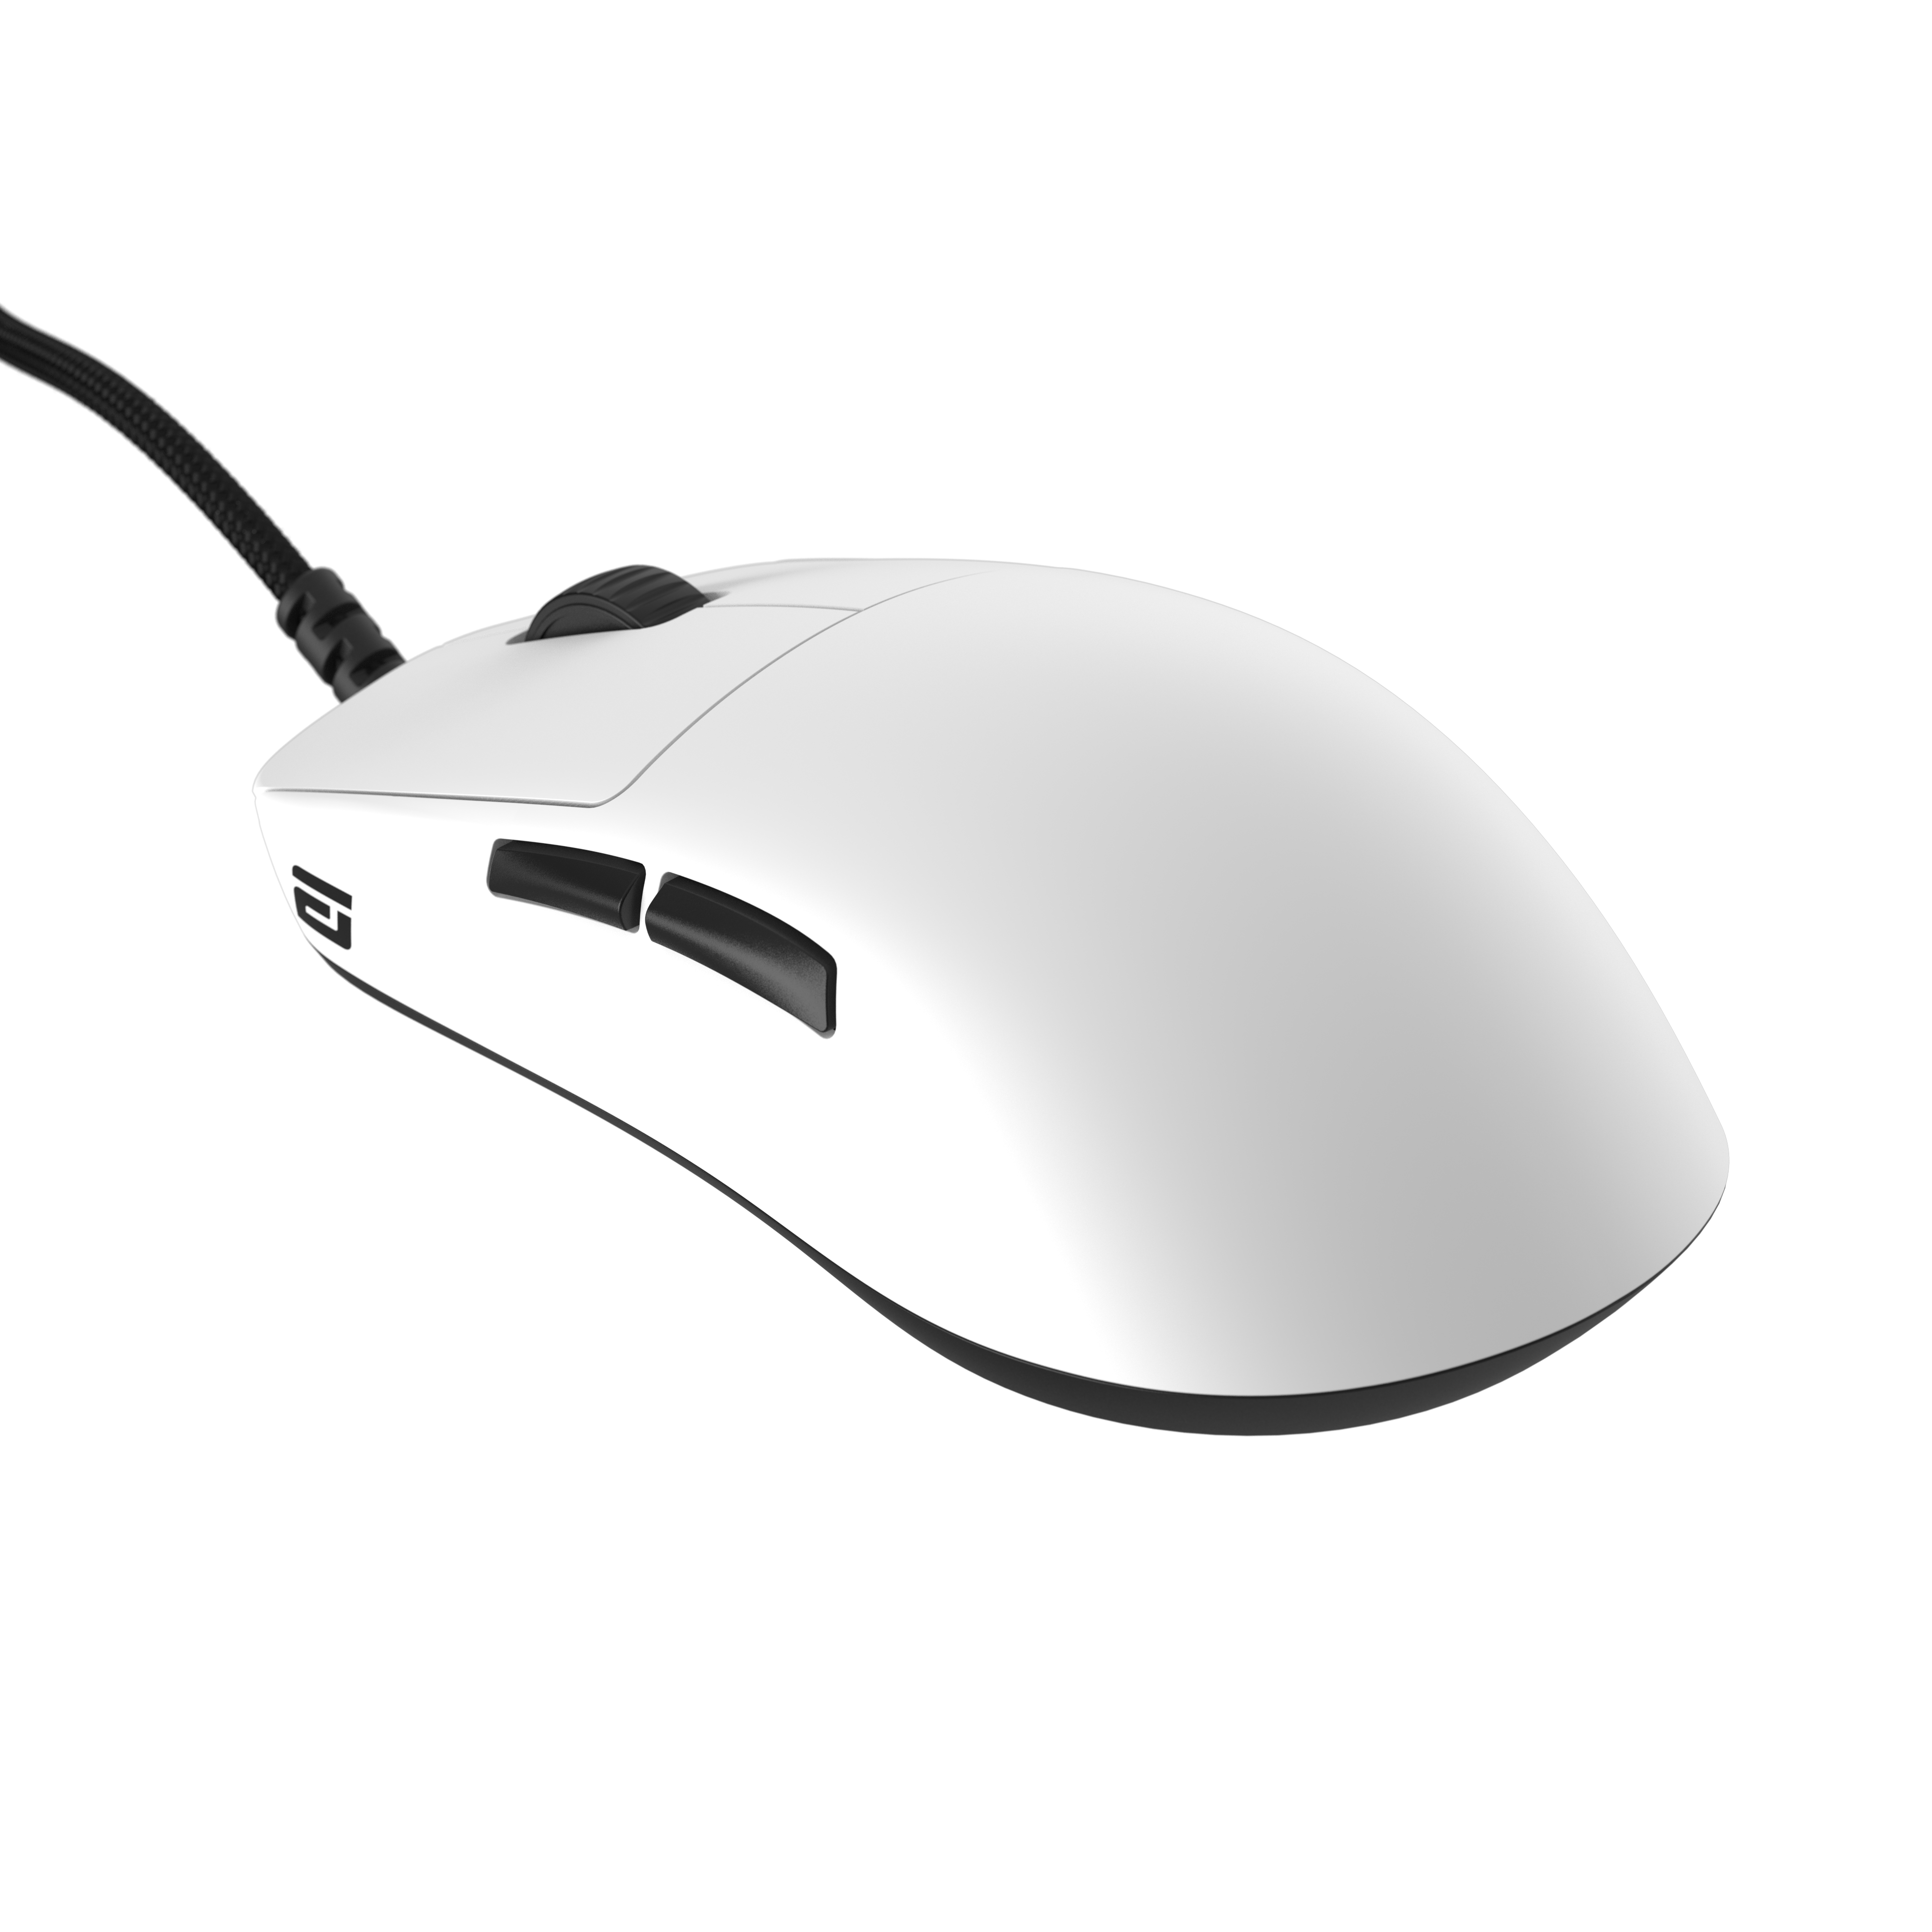 OP1 8k Gaming Maus - Weiß